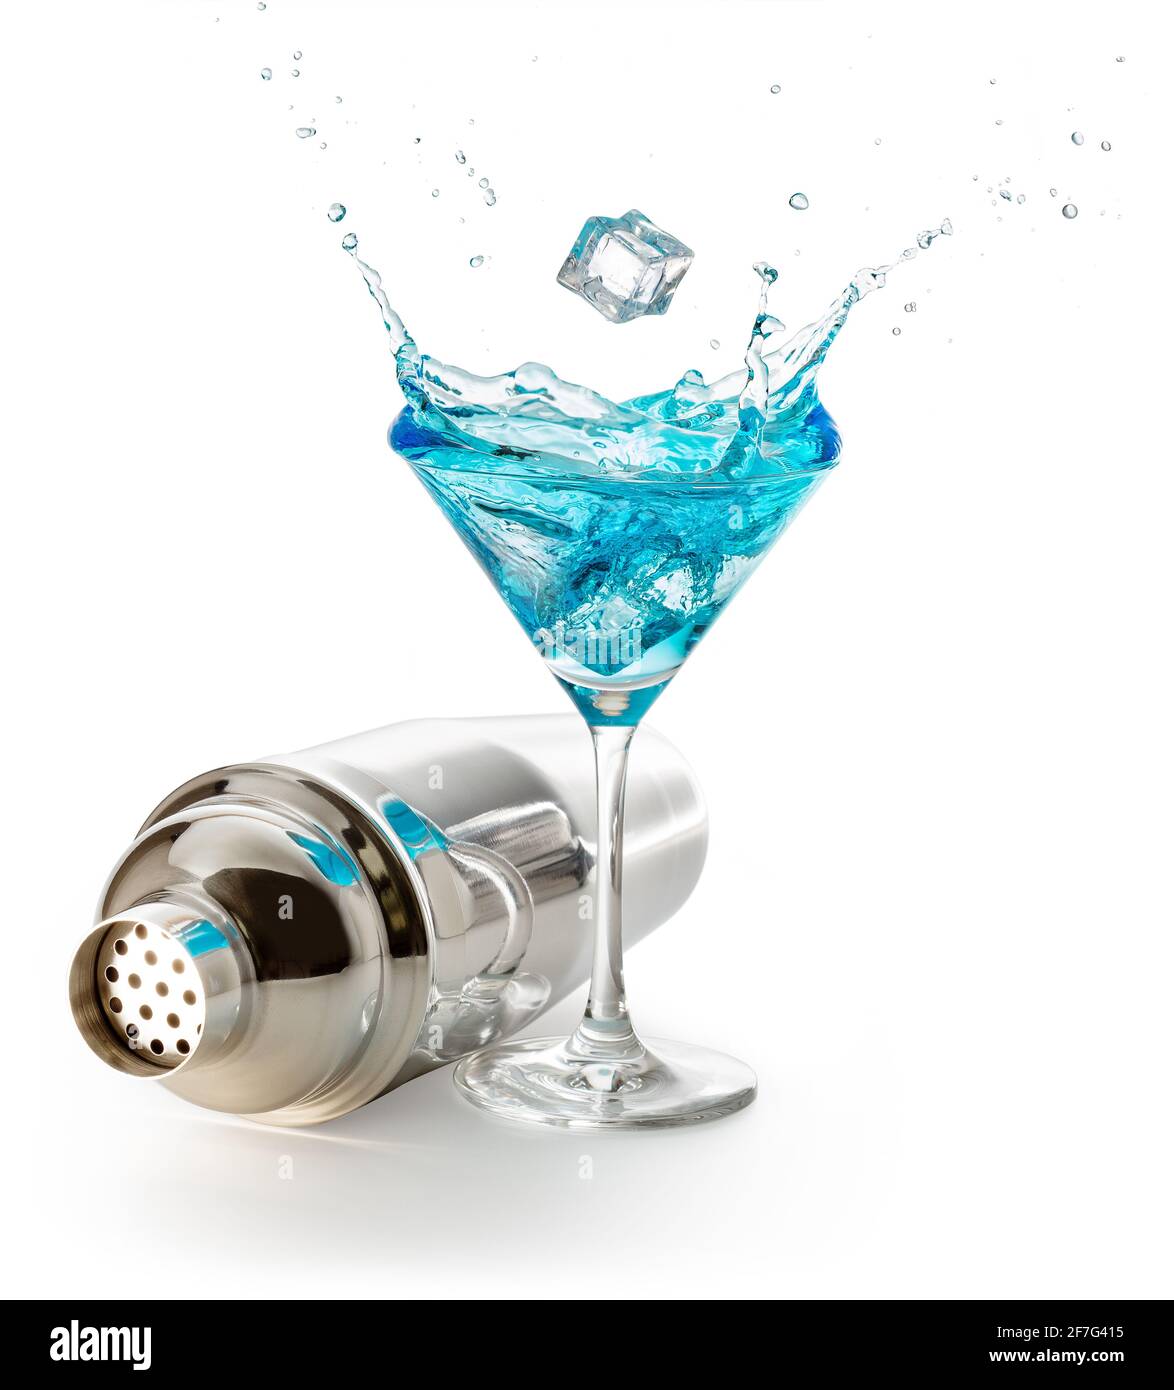 Stahlschüttler und spritzender blauer martini isoliert auf weißem Hintergrund Stockfoto